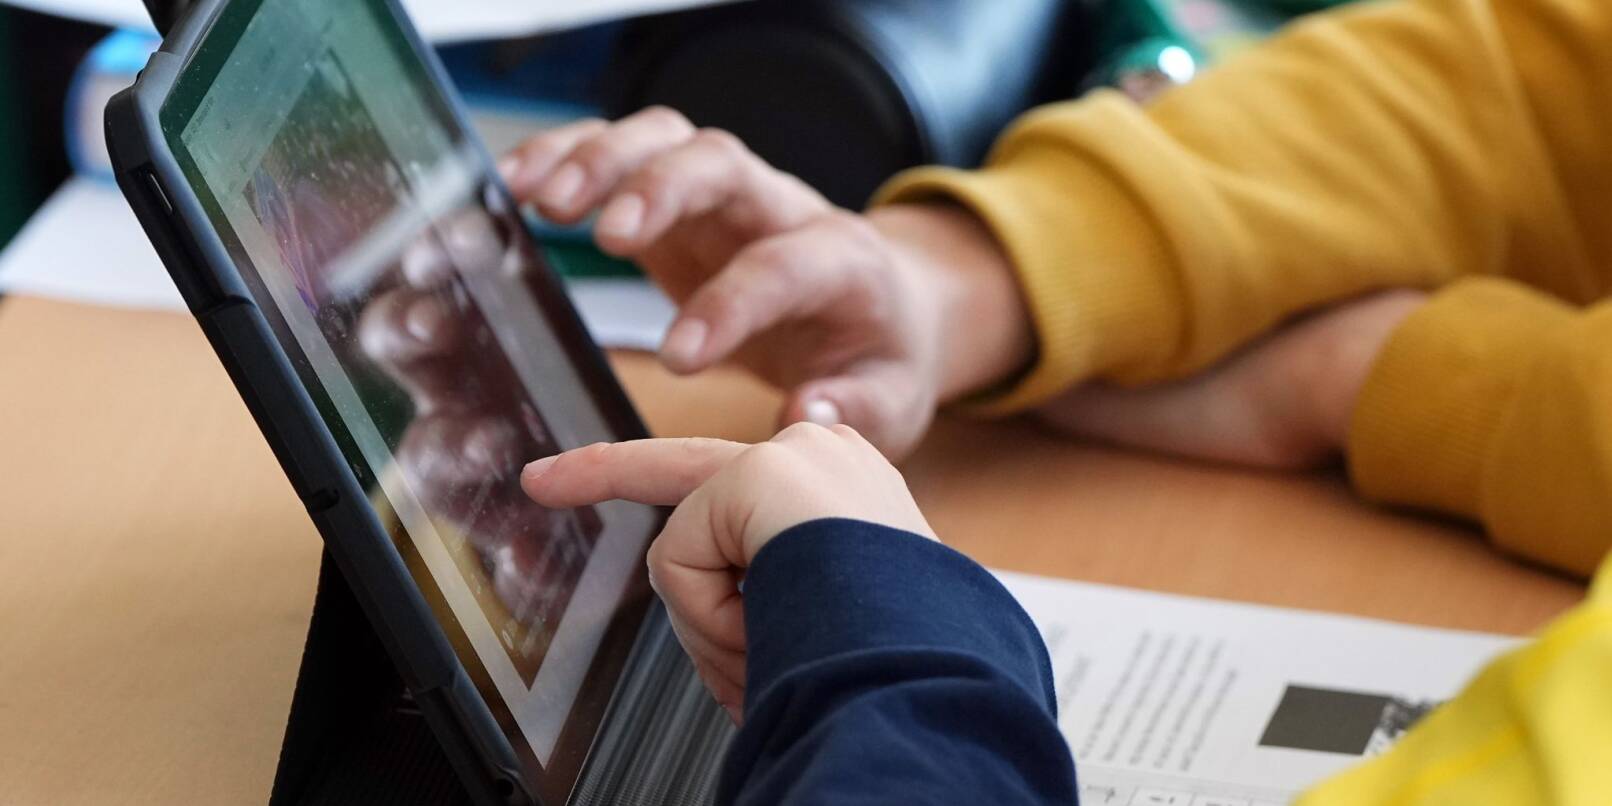 Schüler einer Klasse der Berliner Hunsrück-Grundschule lösen im Unterricht an einem Tablet eine Aufgabe.